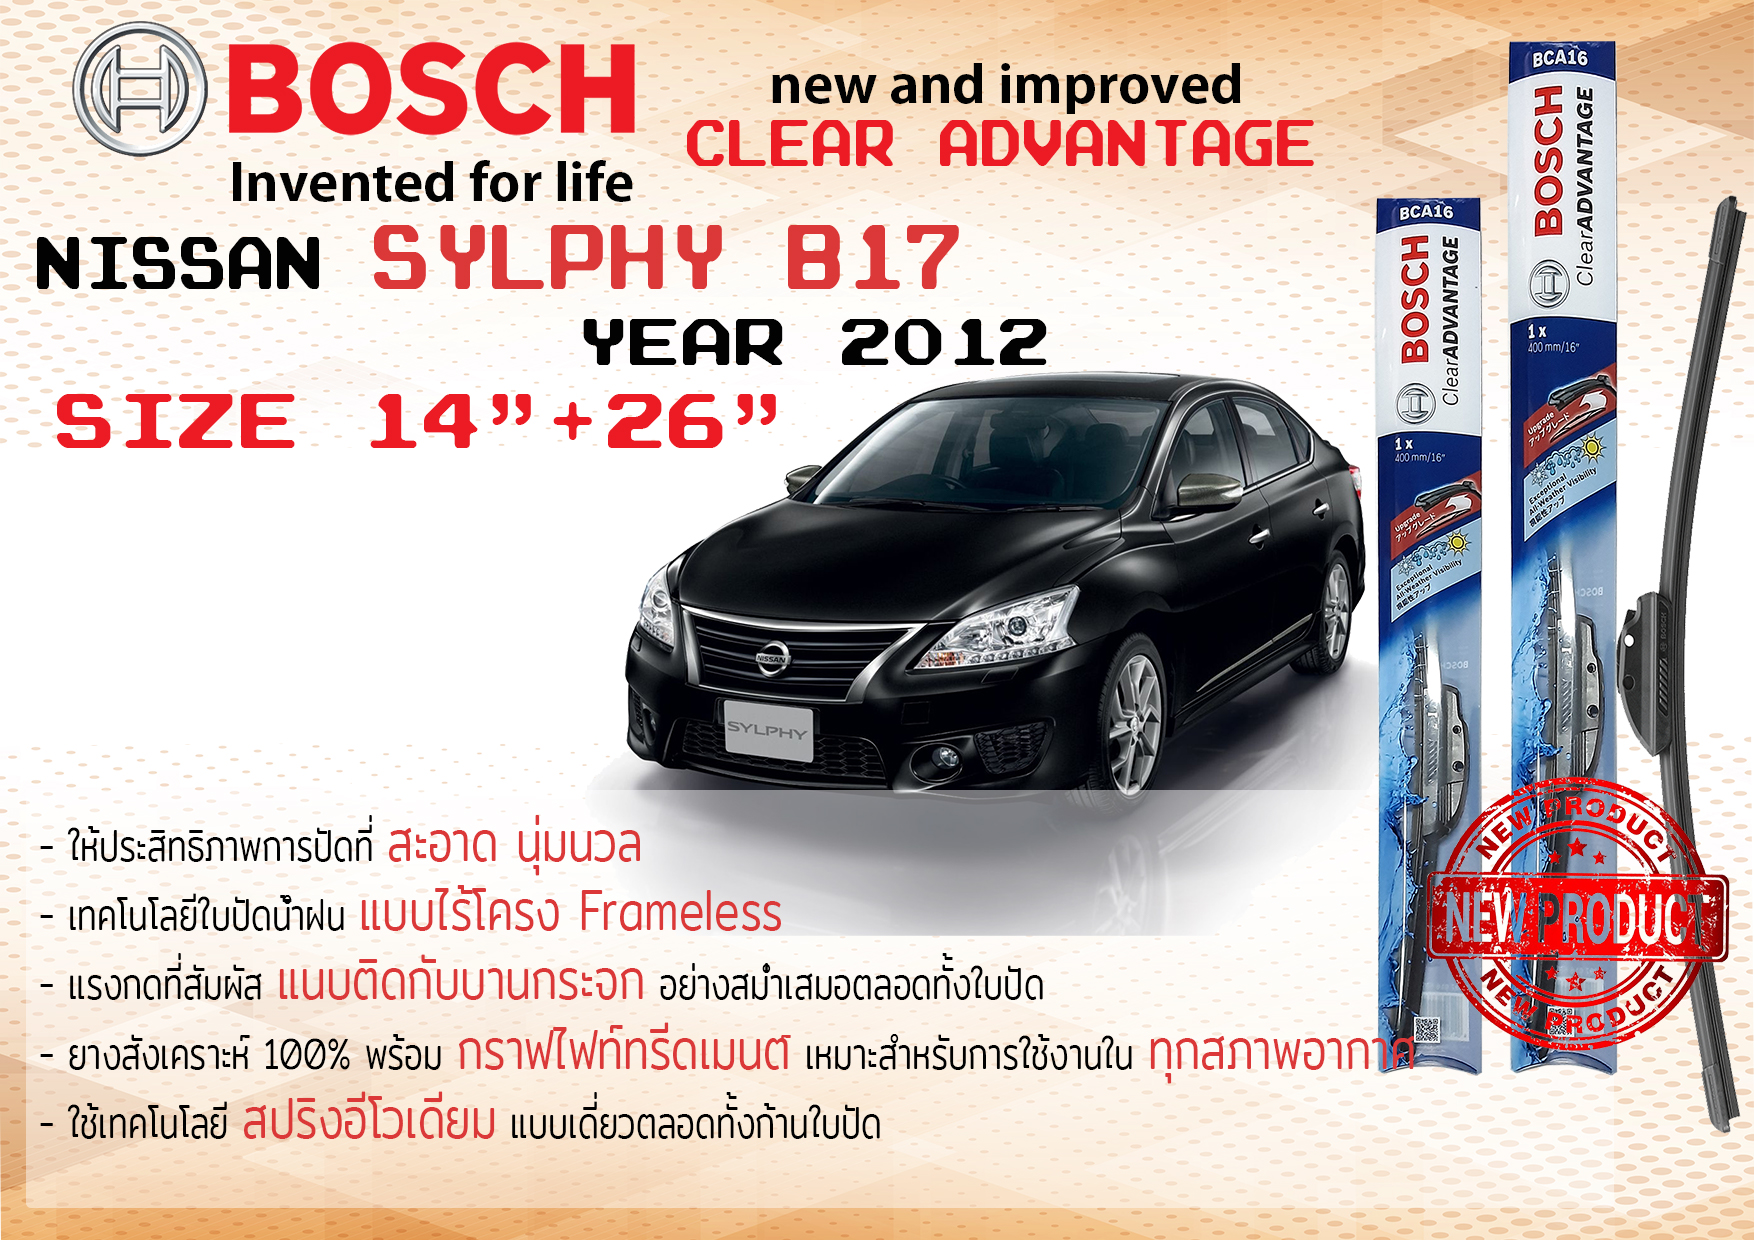 ใบปัดน้ำฝน คู่หน้า Bosch Clear Advantage frameless ก้านอ่อน ขนาด 14”+26” สำหรับรถ Nissan Sylphy, Silphy,Sylfy B17 ปี 2012-On ปี 12,13,14,15,16,17,18 นิสสัน ซิลฟี่ ซิลฟี ทนแสง UV